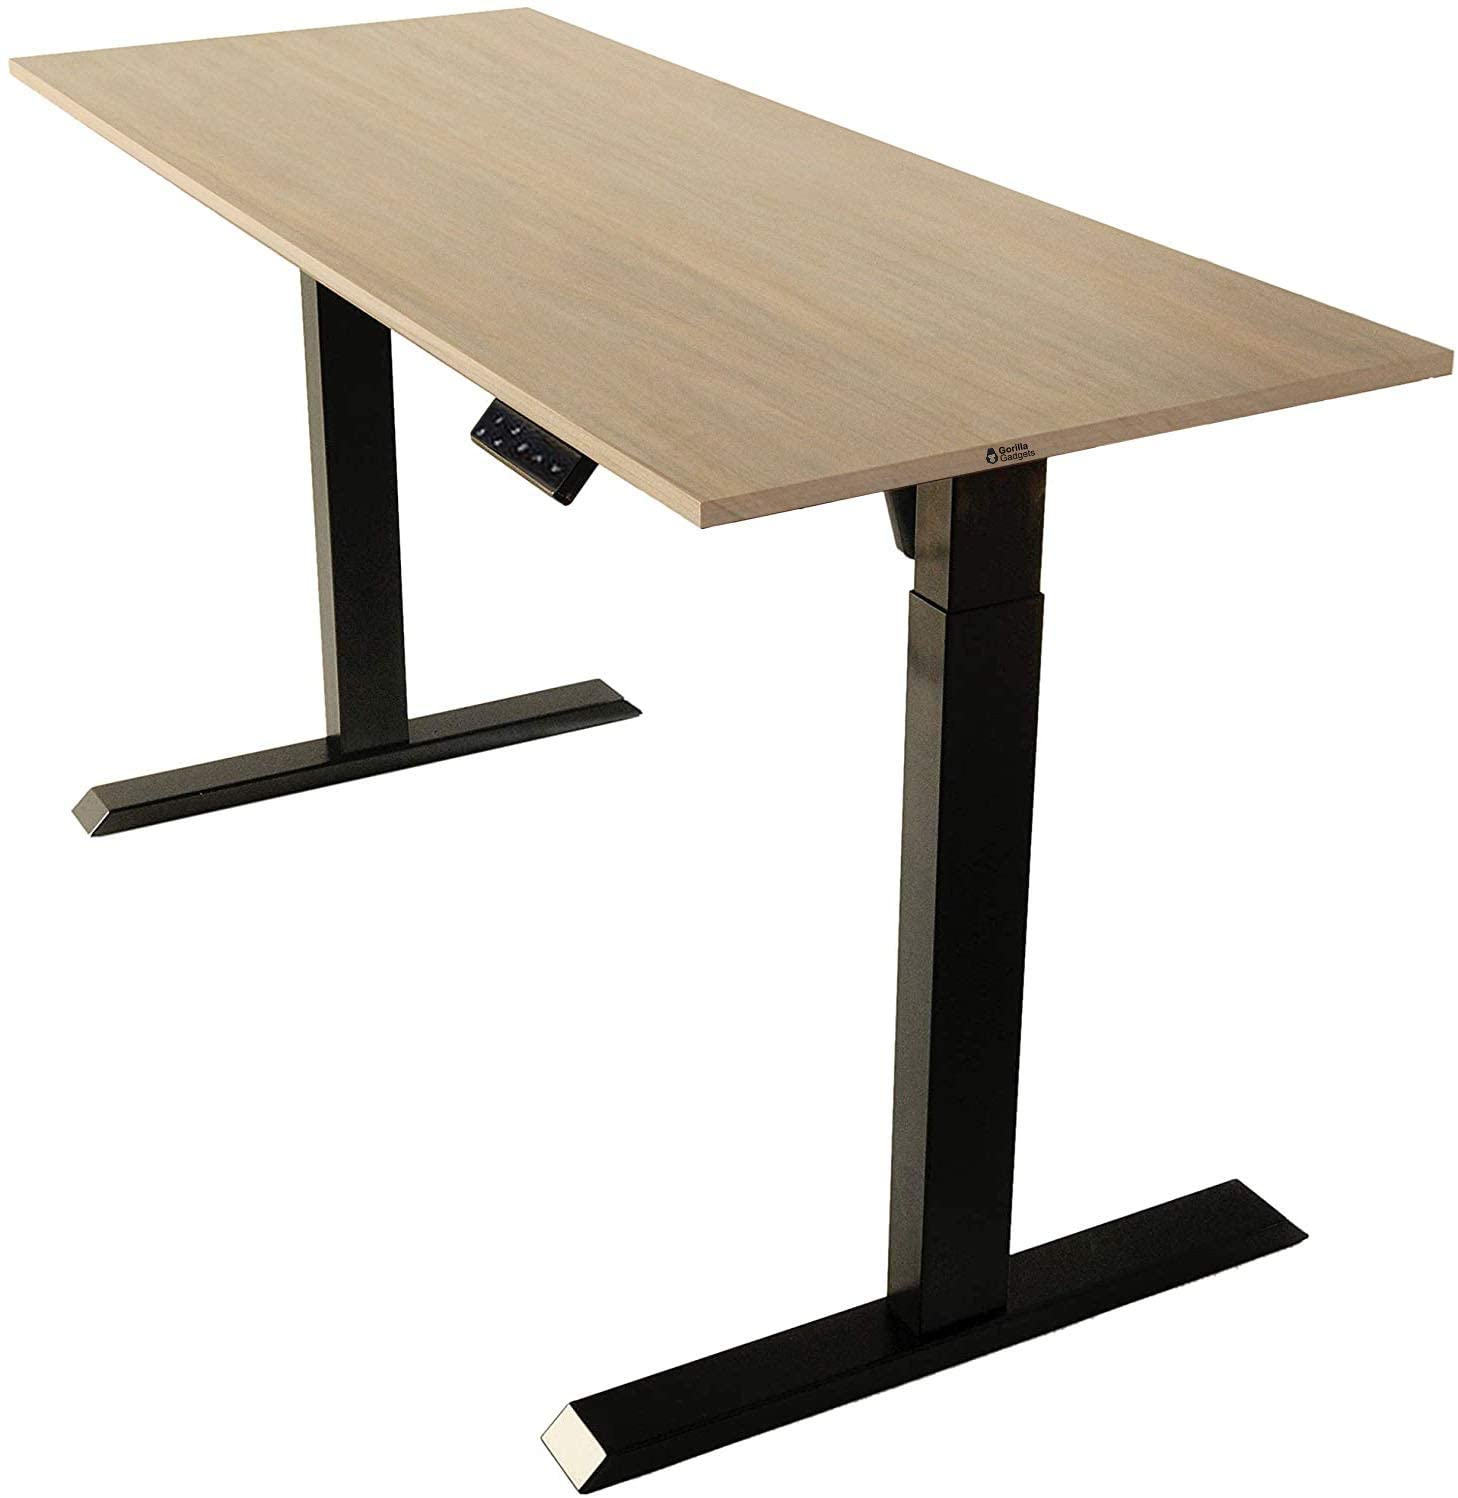 Eliuth Height Adjustable Standing Desk